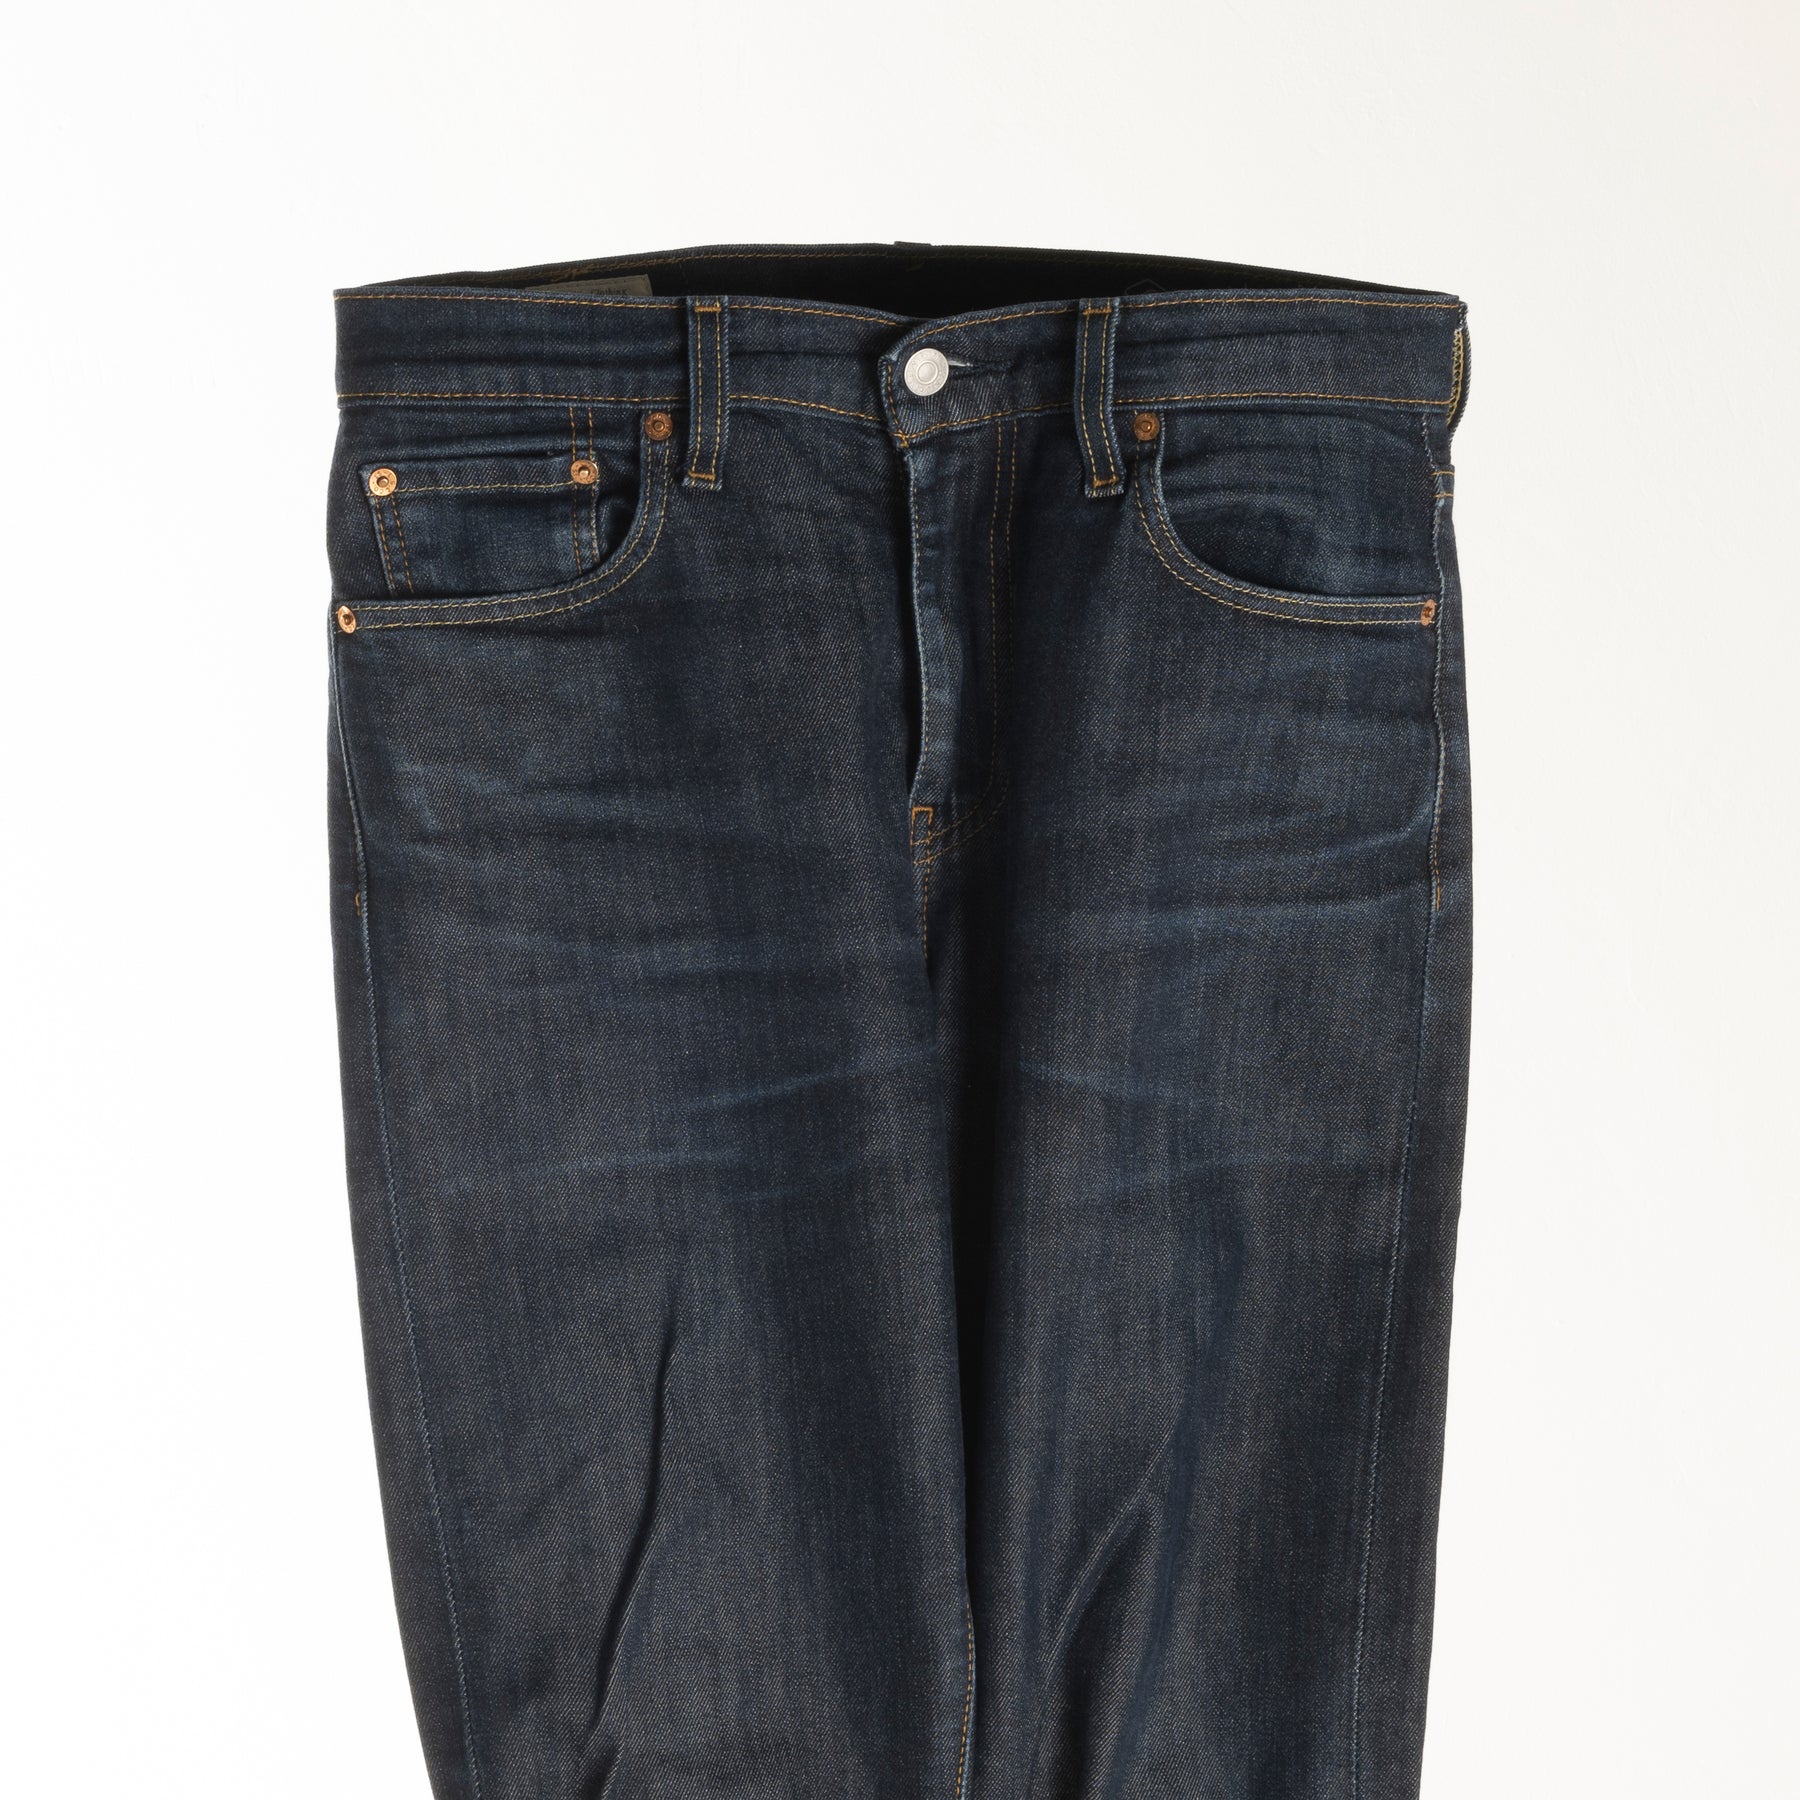 Levi's 512 Blue Jeans Sz 30 x 32 – Pete & Harry